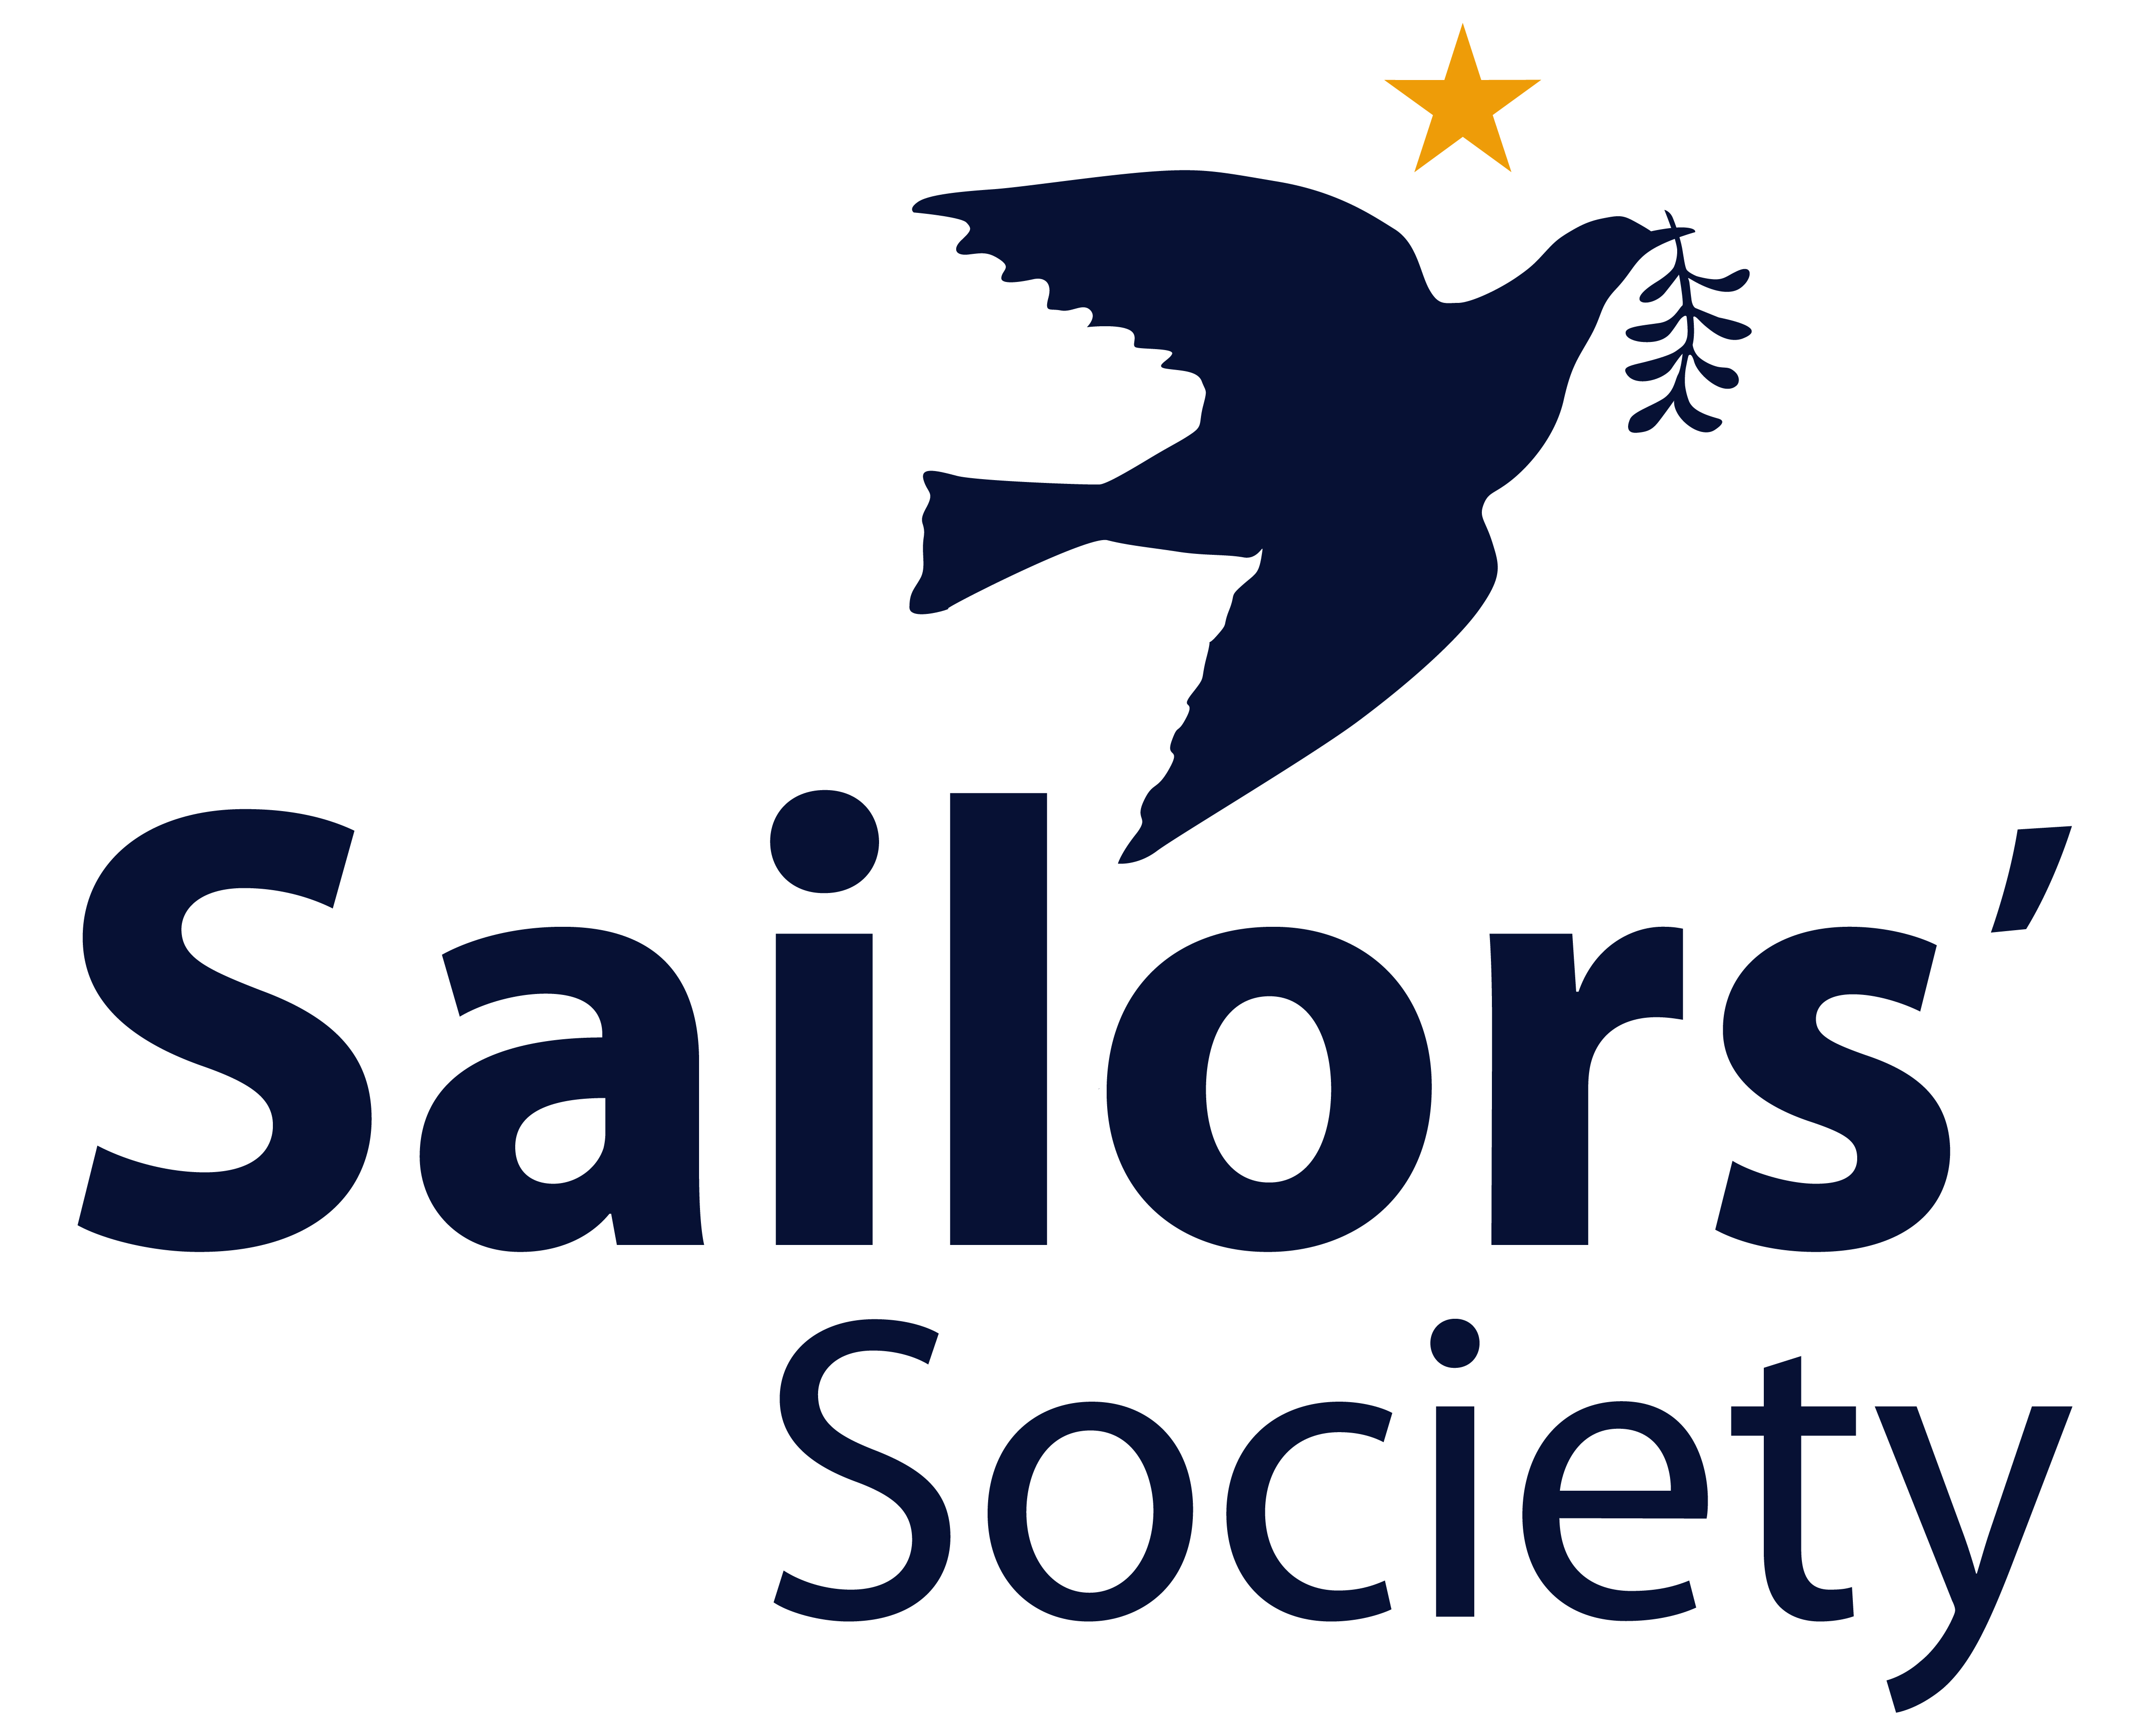 Sailors_Society_logo.jpg